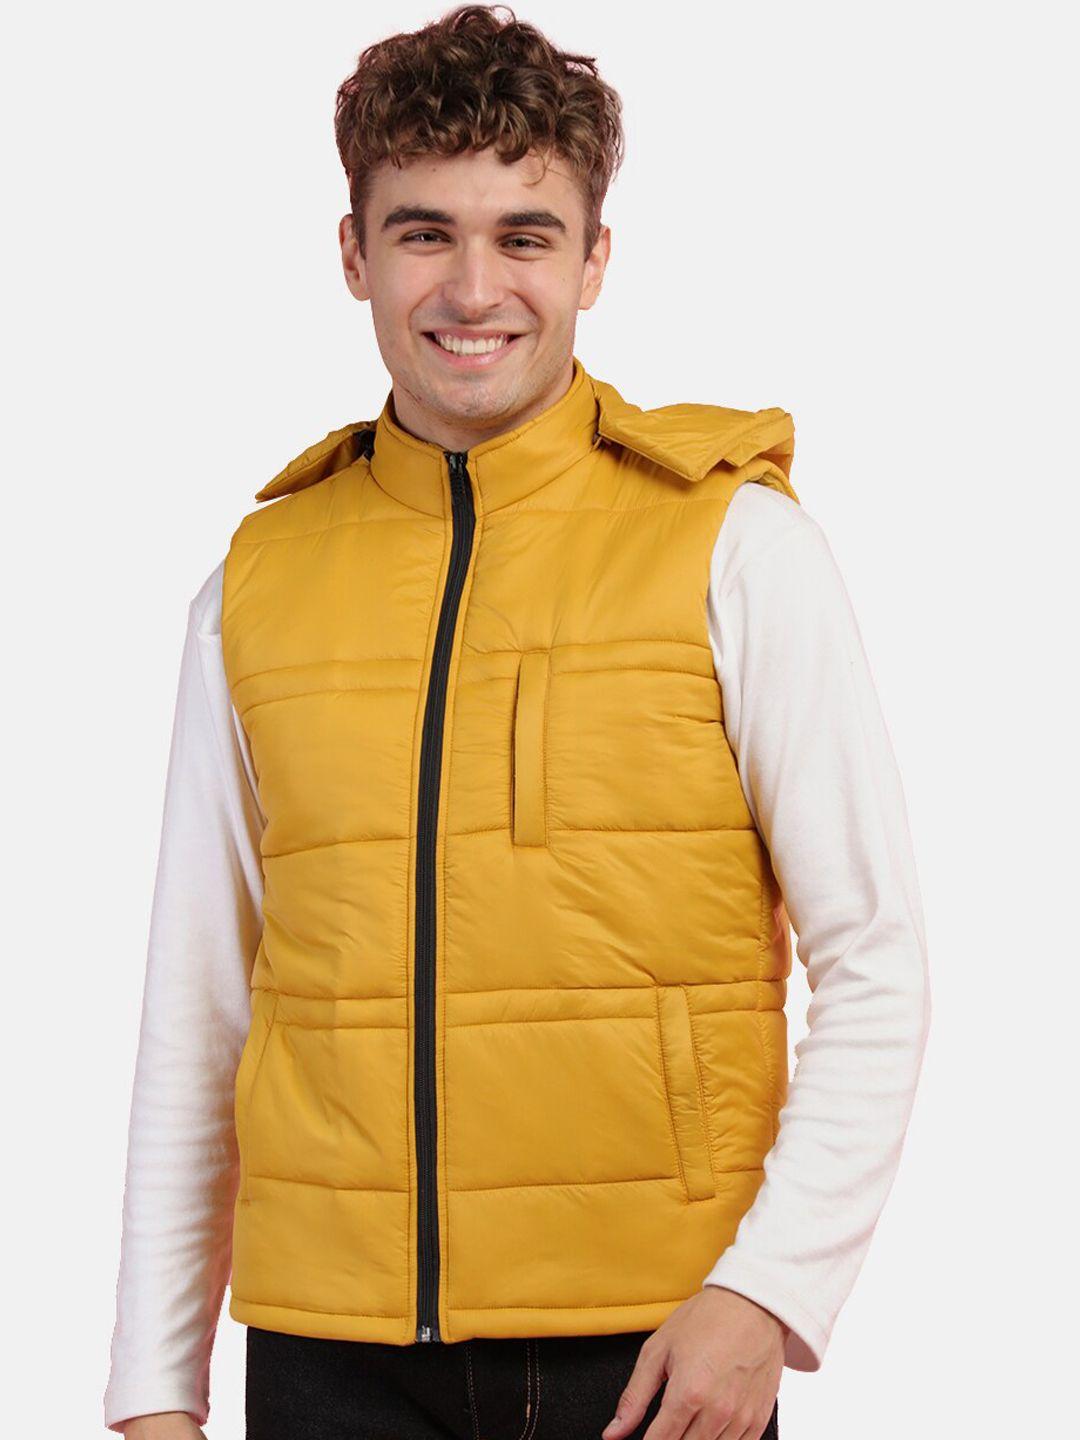 chkokko-men-mustard-outdoor-padded-jacket